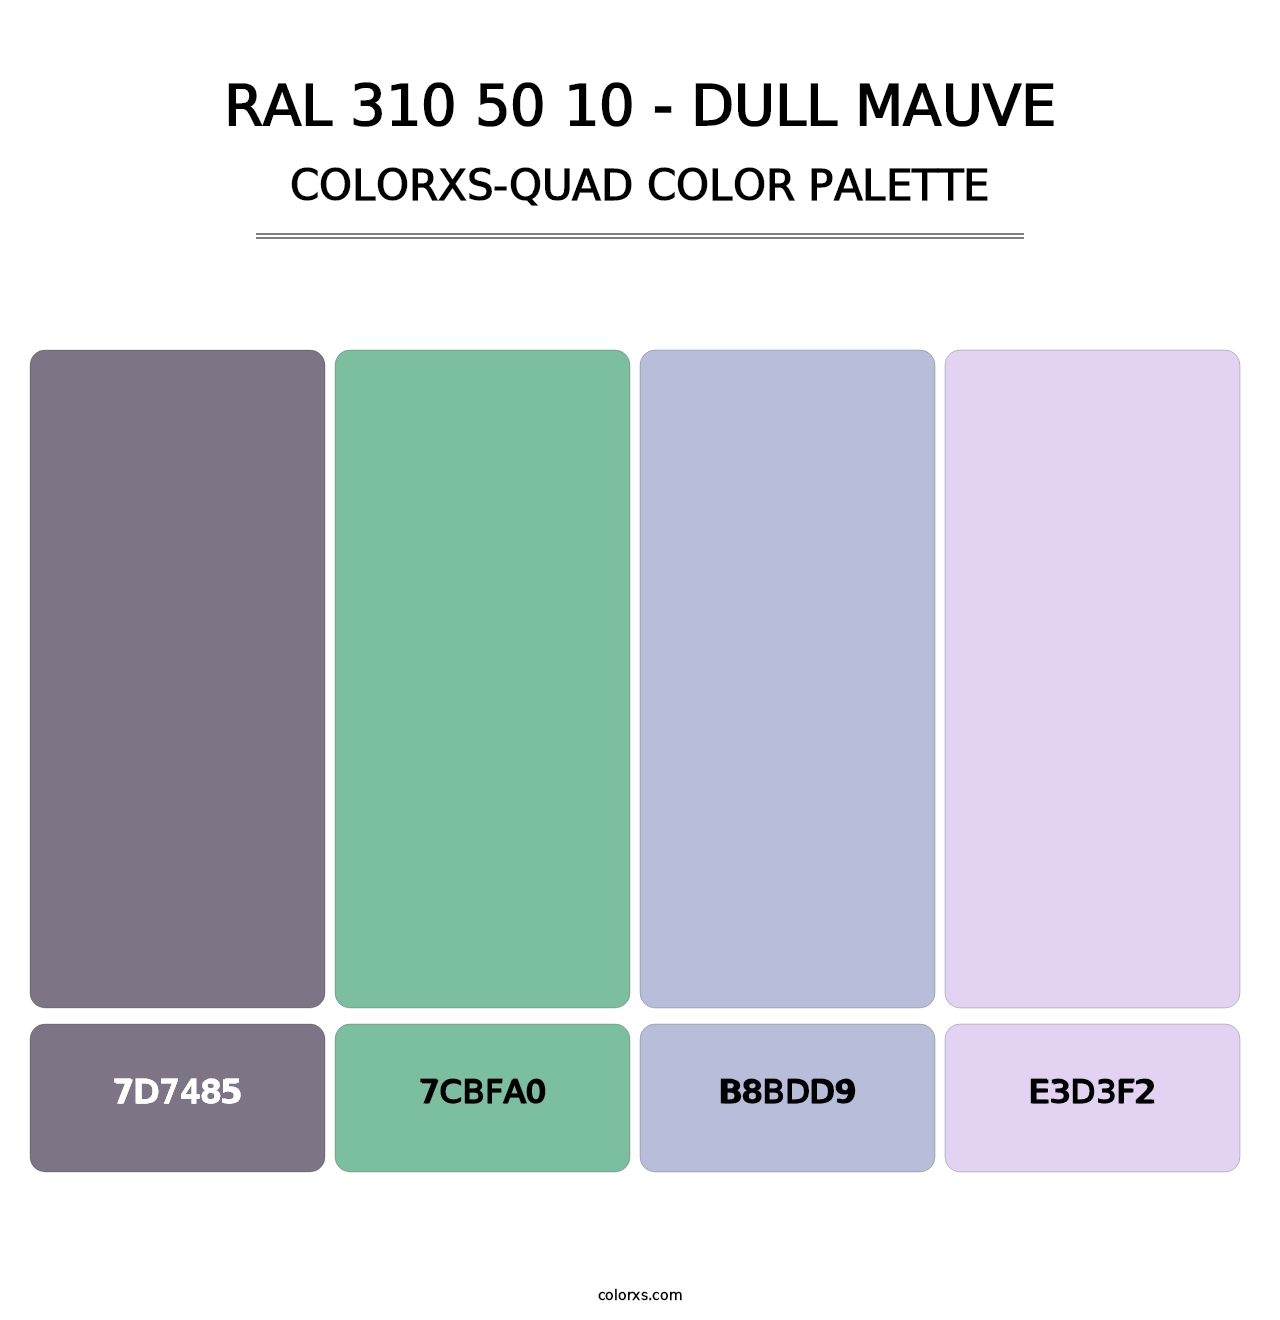 RAL 310 50 10 - Dull Mauve - Colorxs Quad Palette